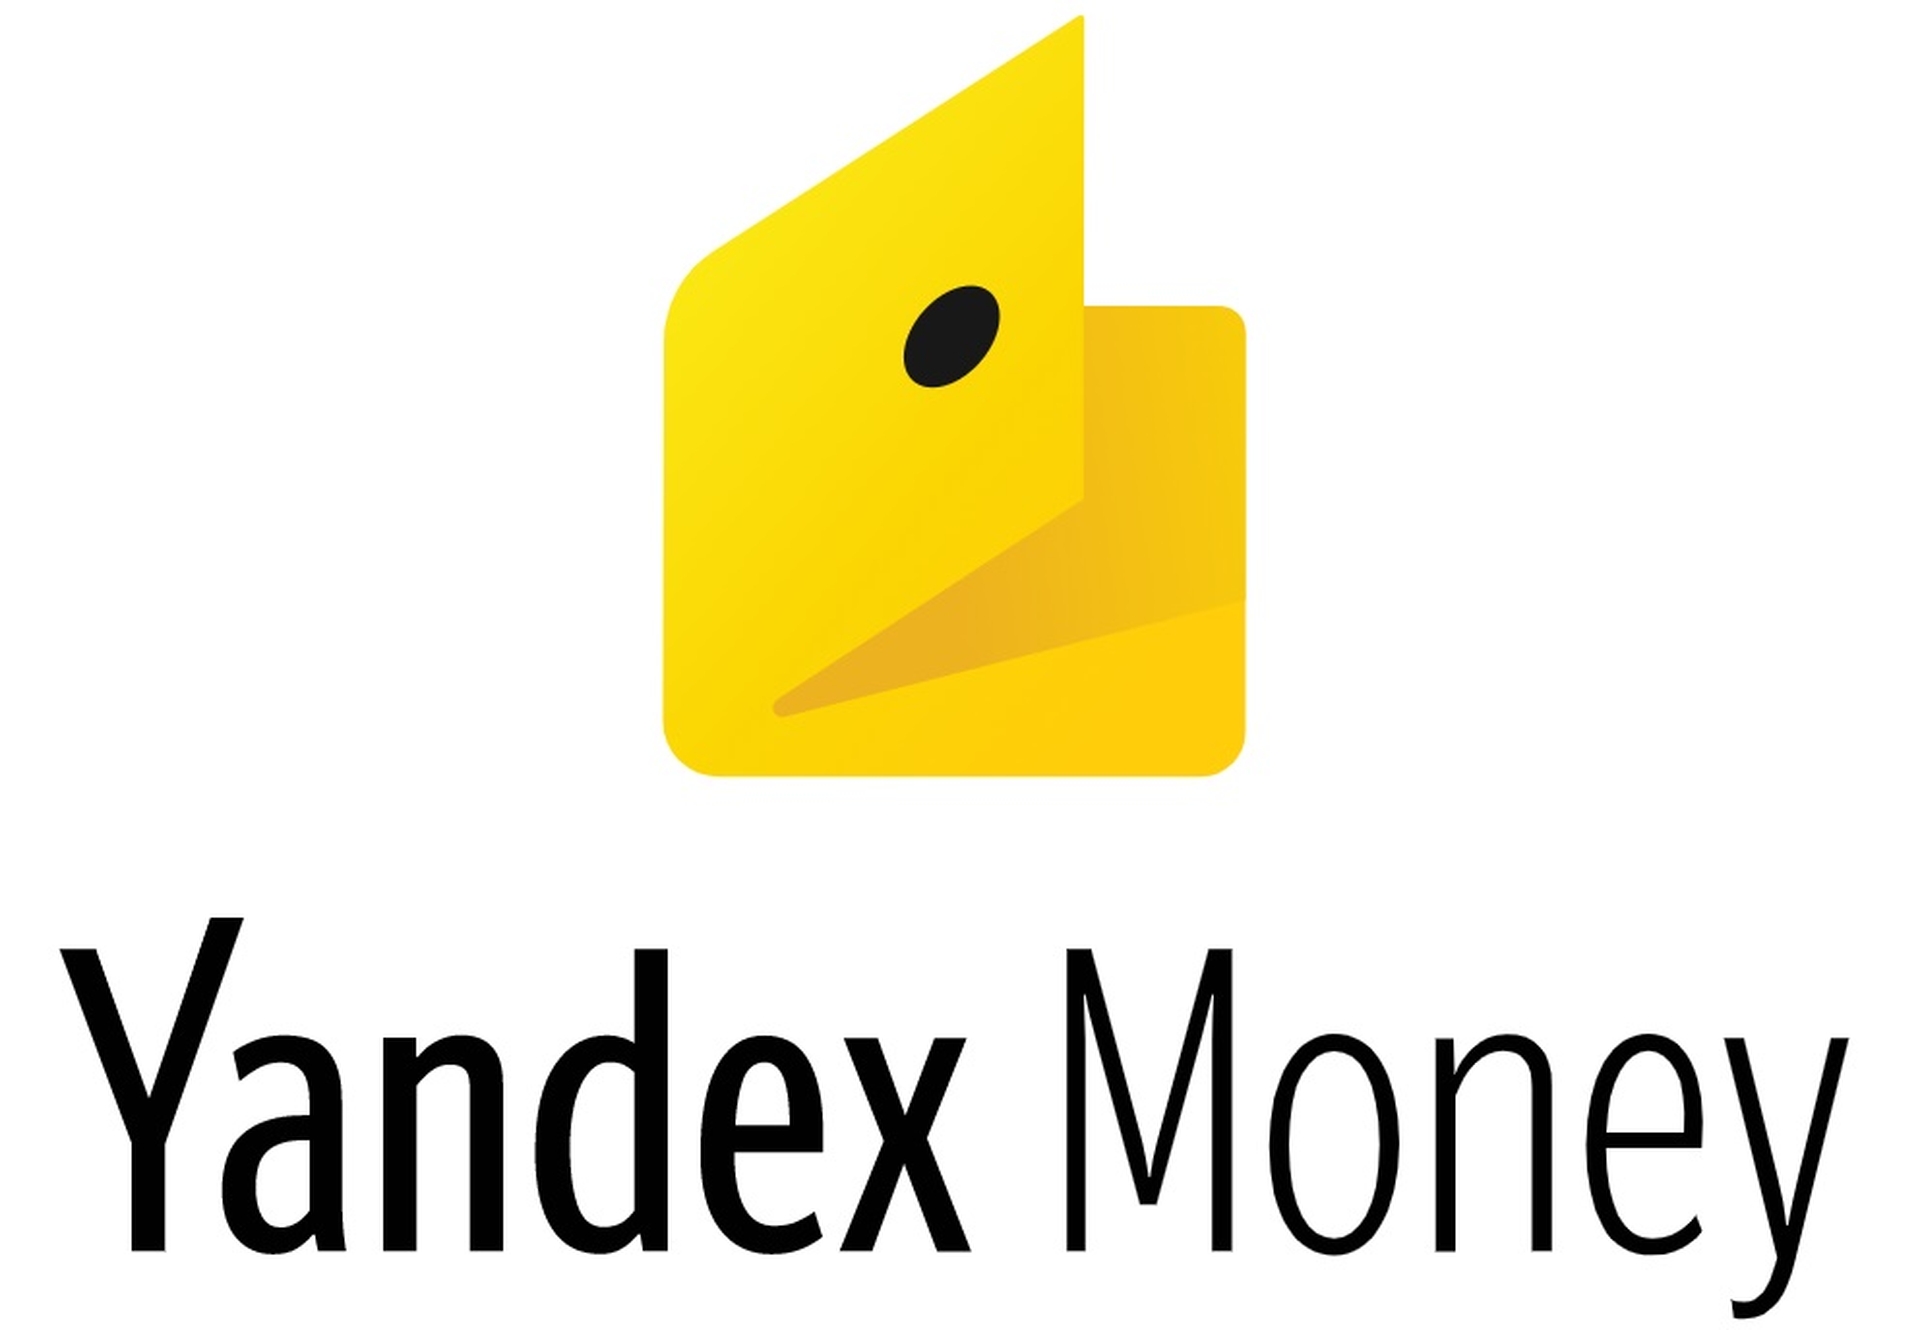 Dans cet article, nous allons expliquer comment acheter du Bitcoin avec Yandex Money, afin que vous puissiez utiliser ce service lors de votre prochain achat de Bitcoin.